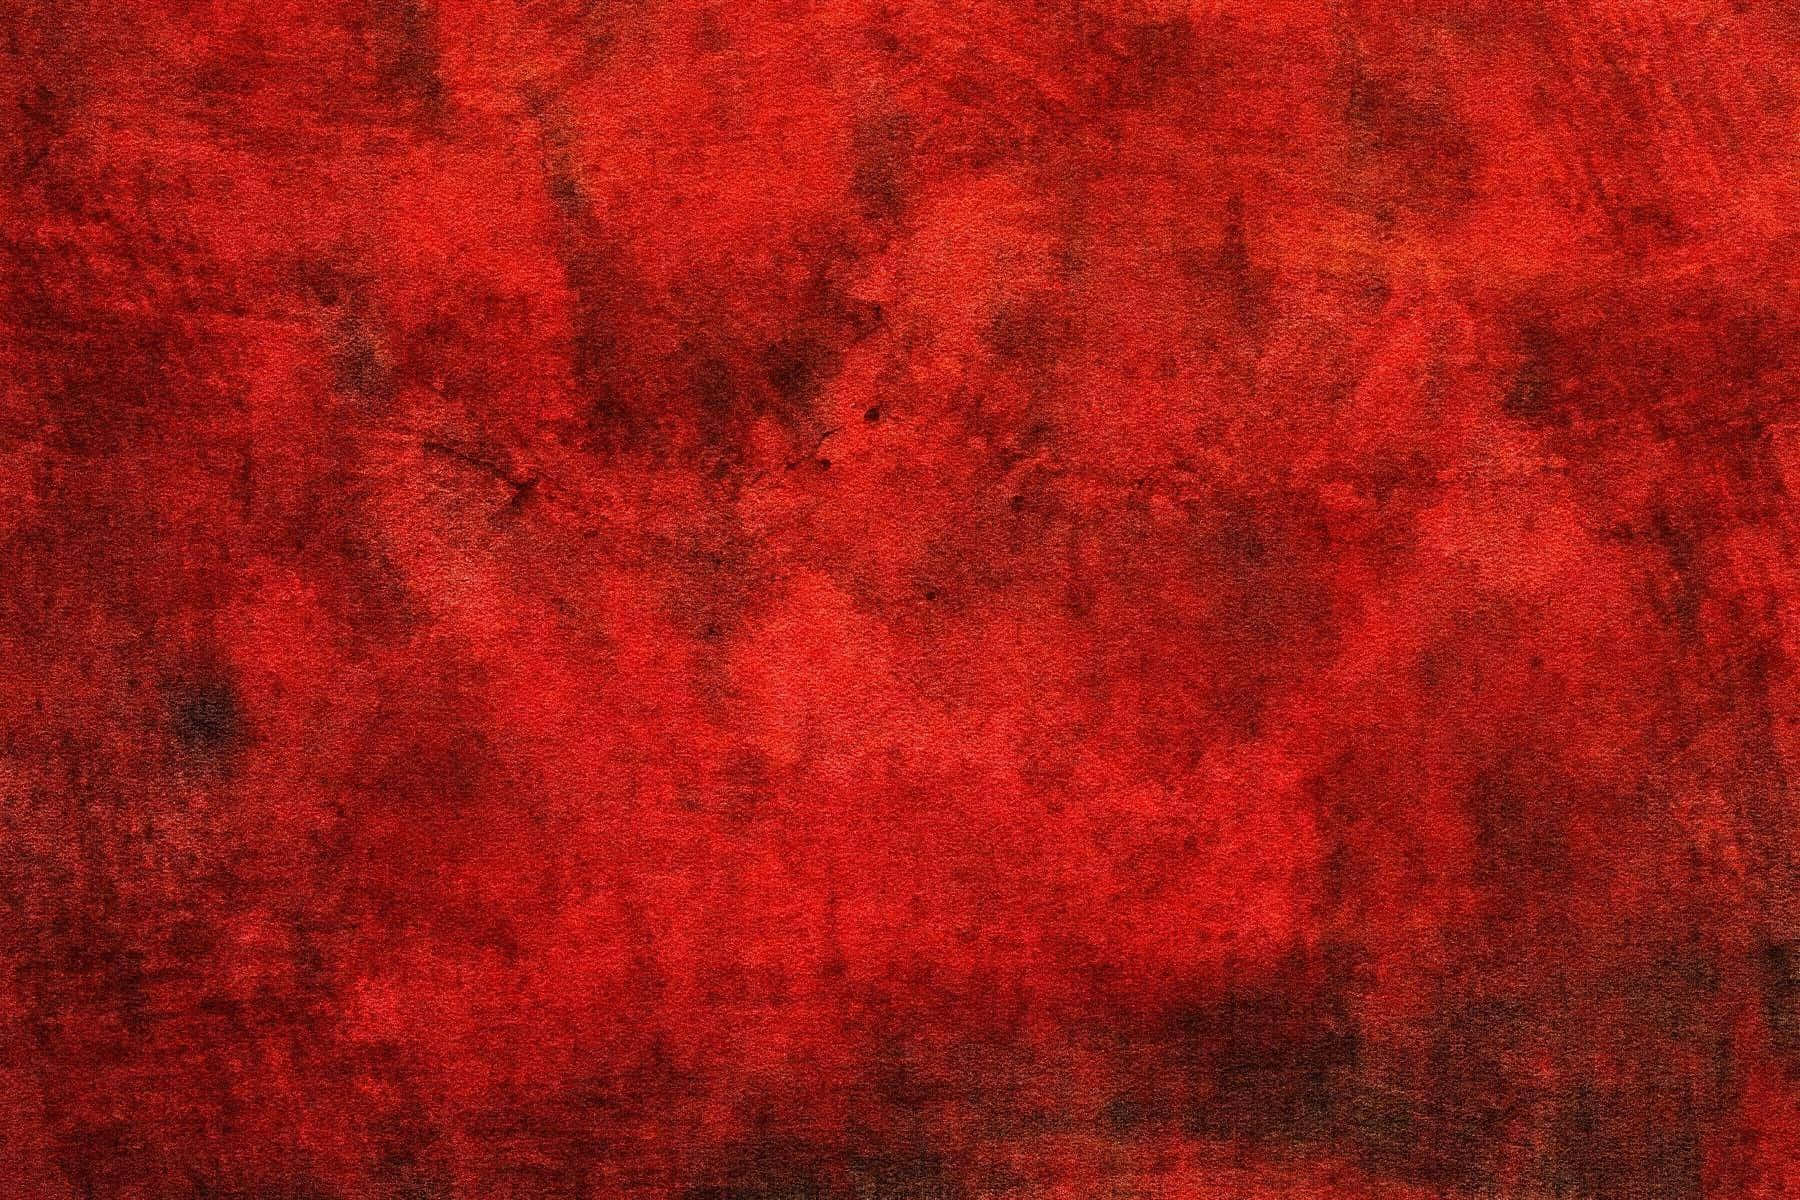 Immaginedi Un Quadro Astratto Con Texture Rossa.